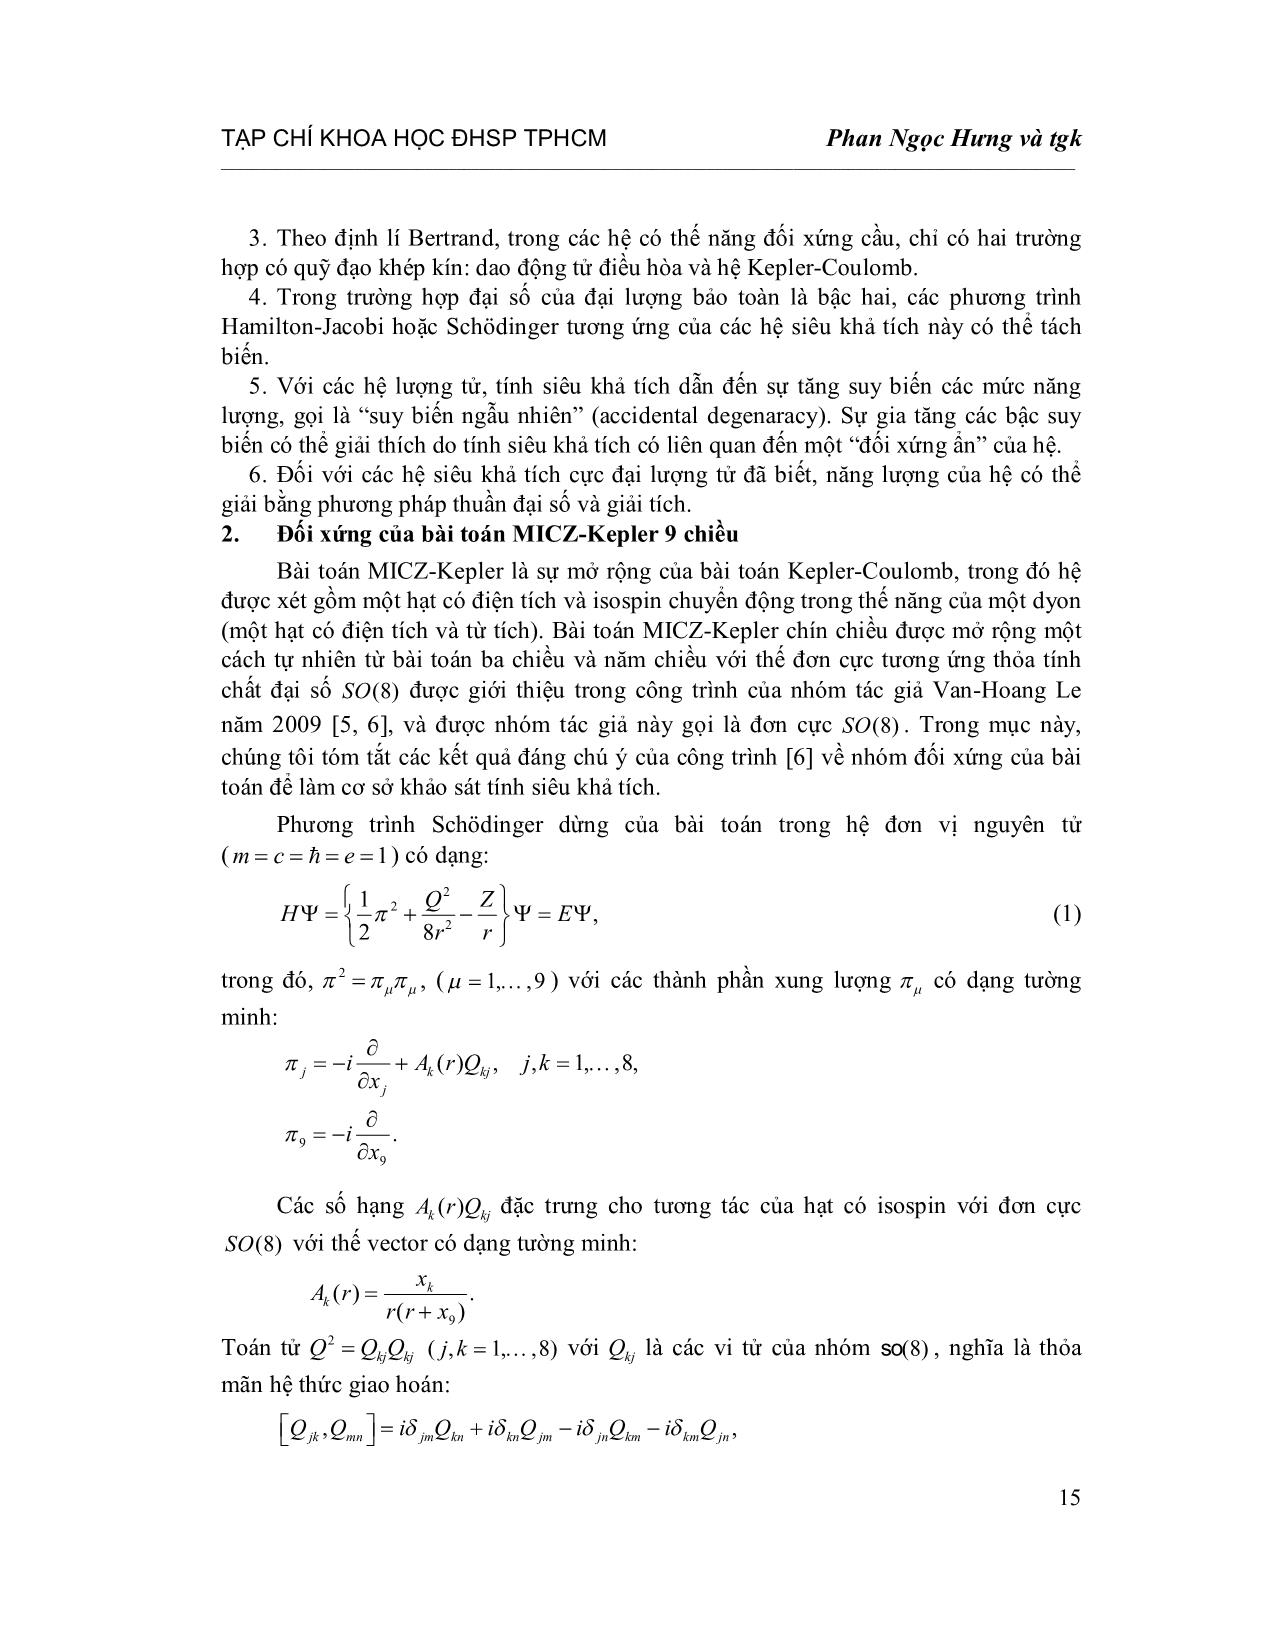 Tính siêu khả tích của bài toán Micz-Kepler chín chiều trang 3